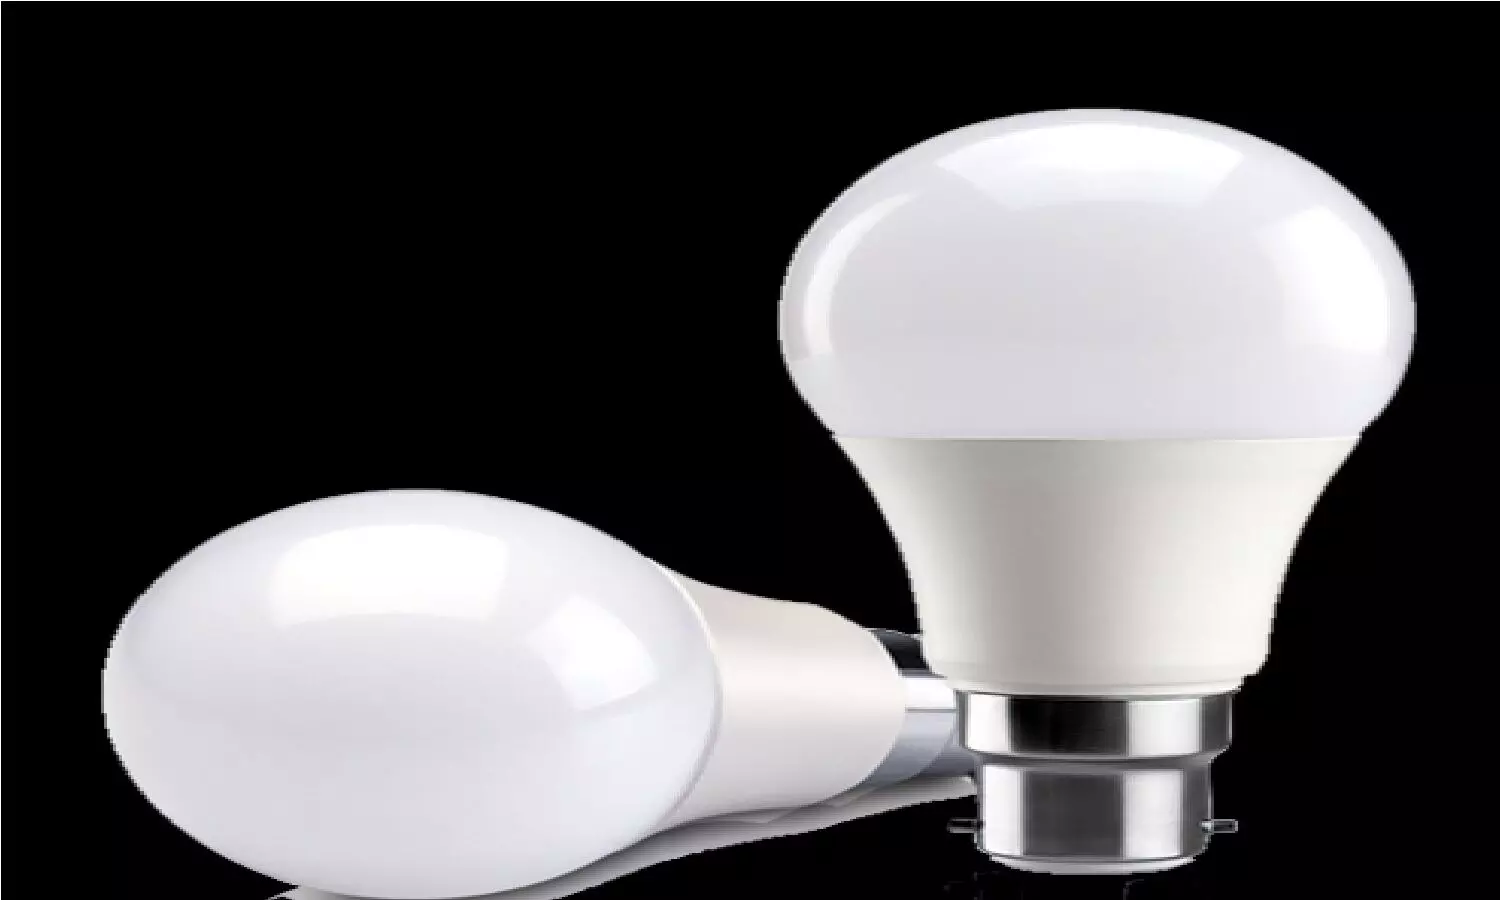 Led Bulb 2022: ये है आवाज से चालू और बंद होने वाला Smart Led Bulb, फटाफट खरीदे